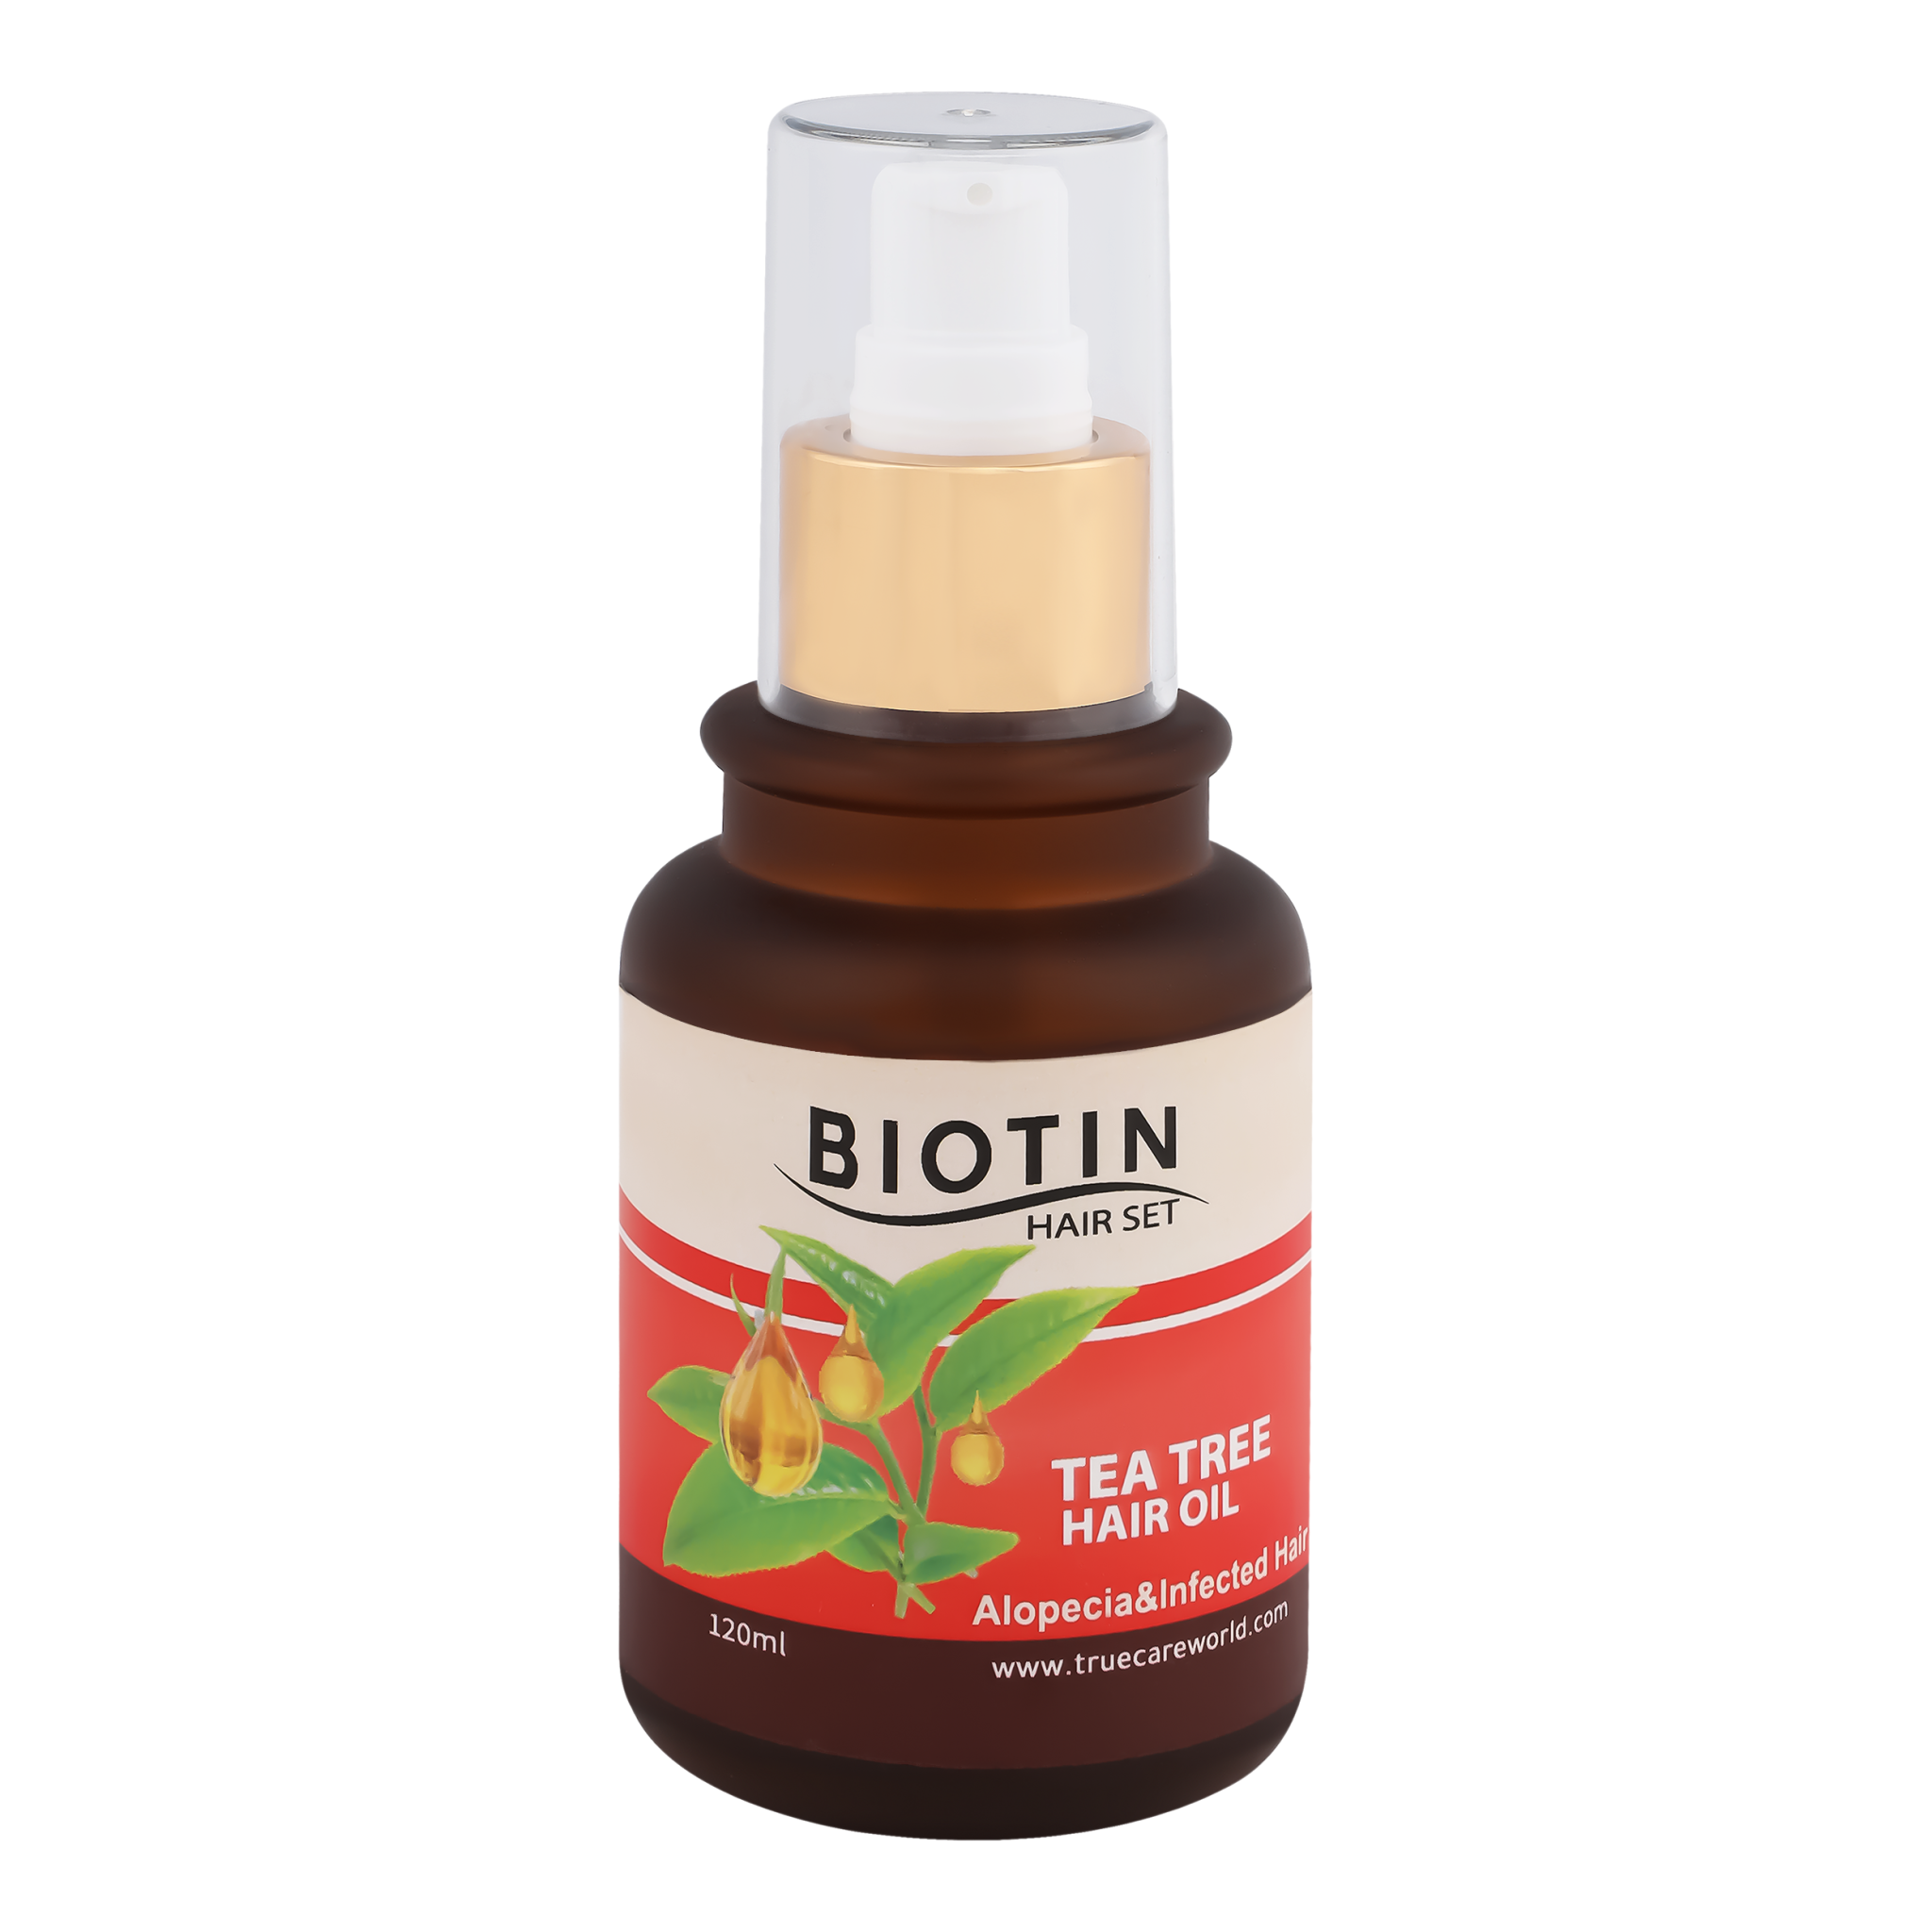 Biotin Hair Set, Tea tree hair oil, strong anti-dandruff & improve hair  growth,120ml | True Care World